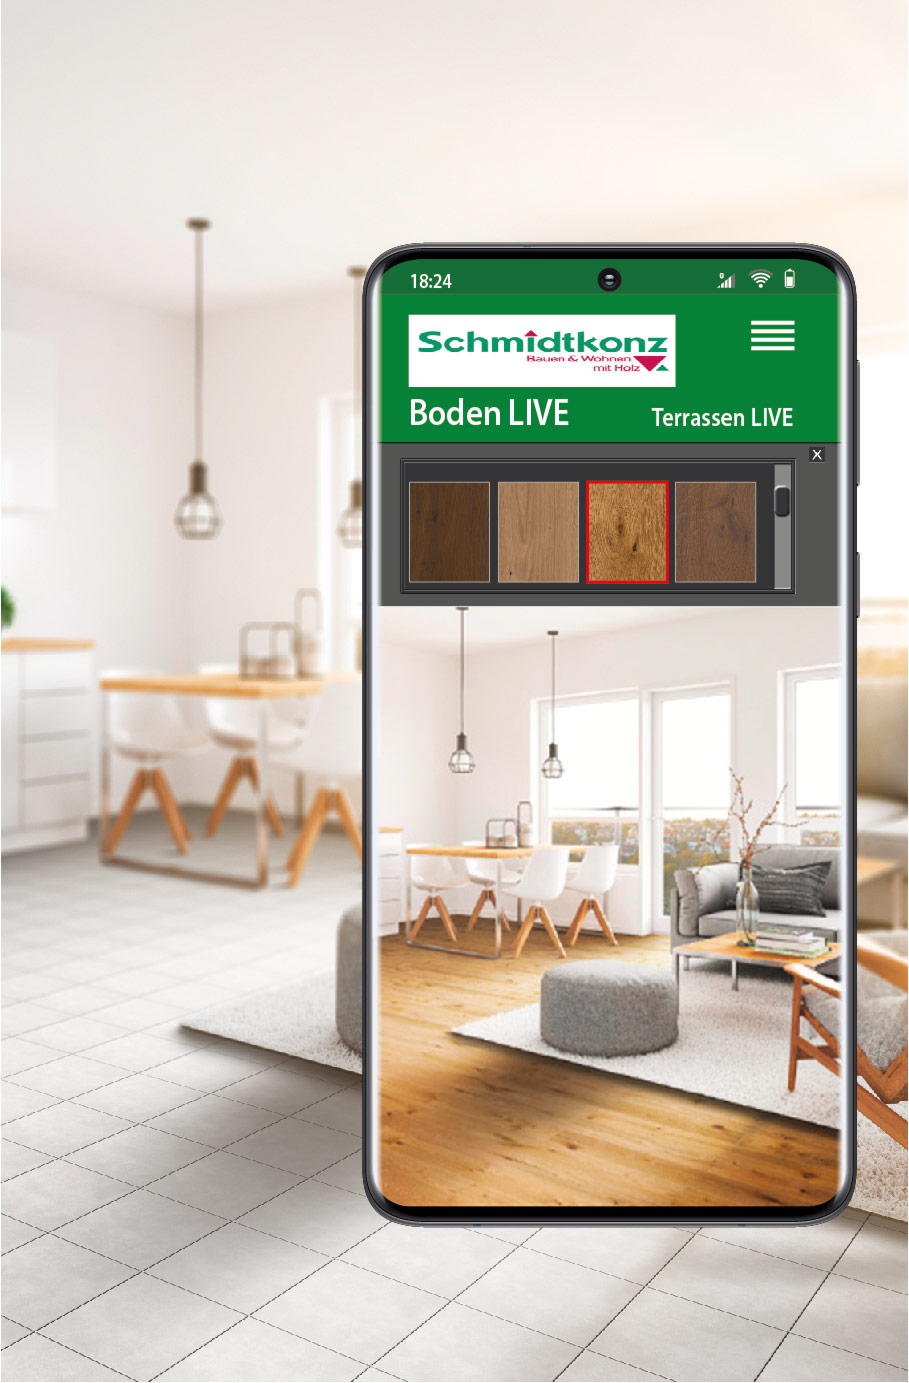 Schmidtkonz Boden Live - Parkettboden, Laminat, Designboden direkt und sofort digital im eigenen Raum verlegen